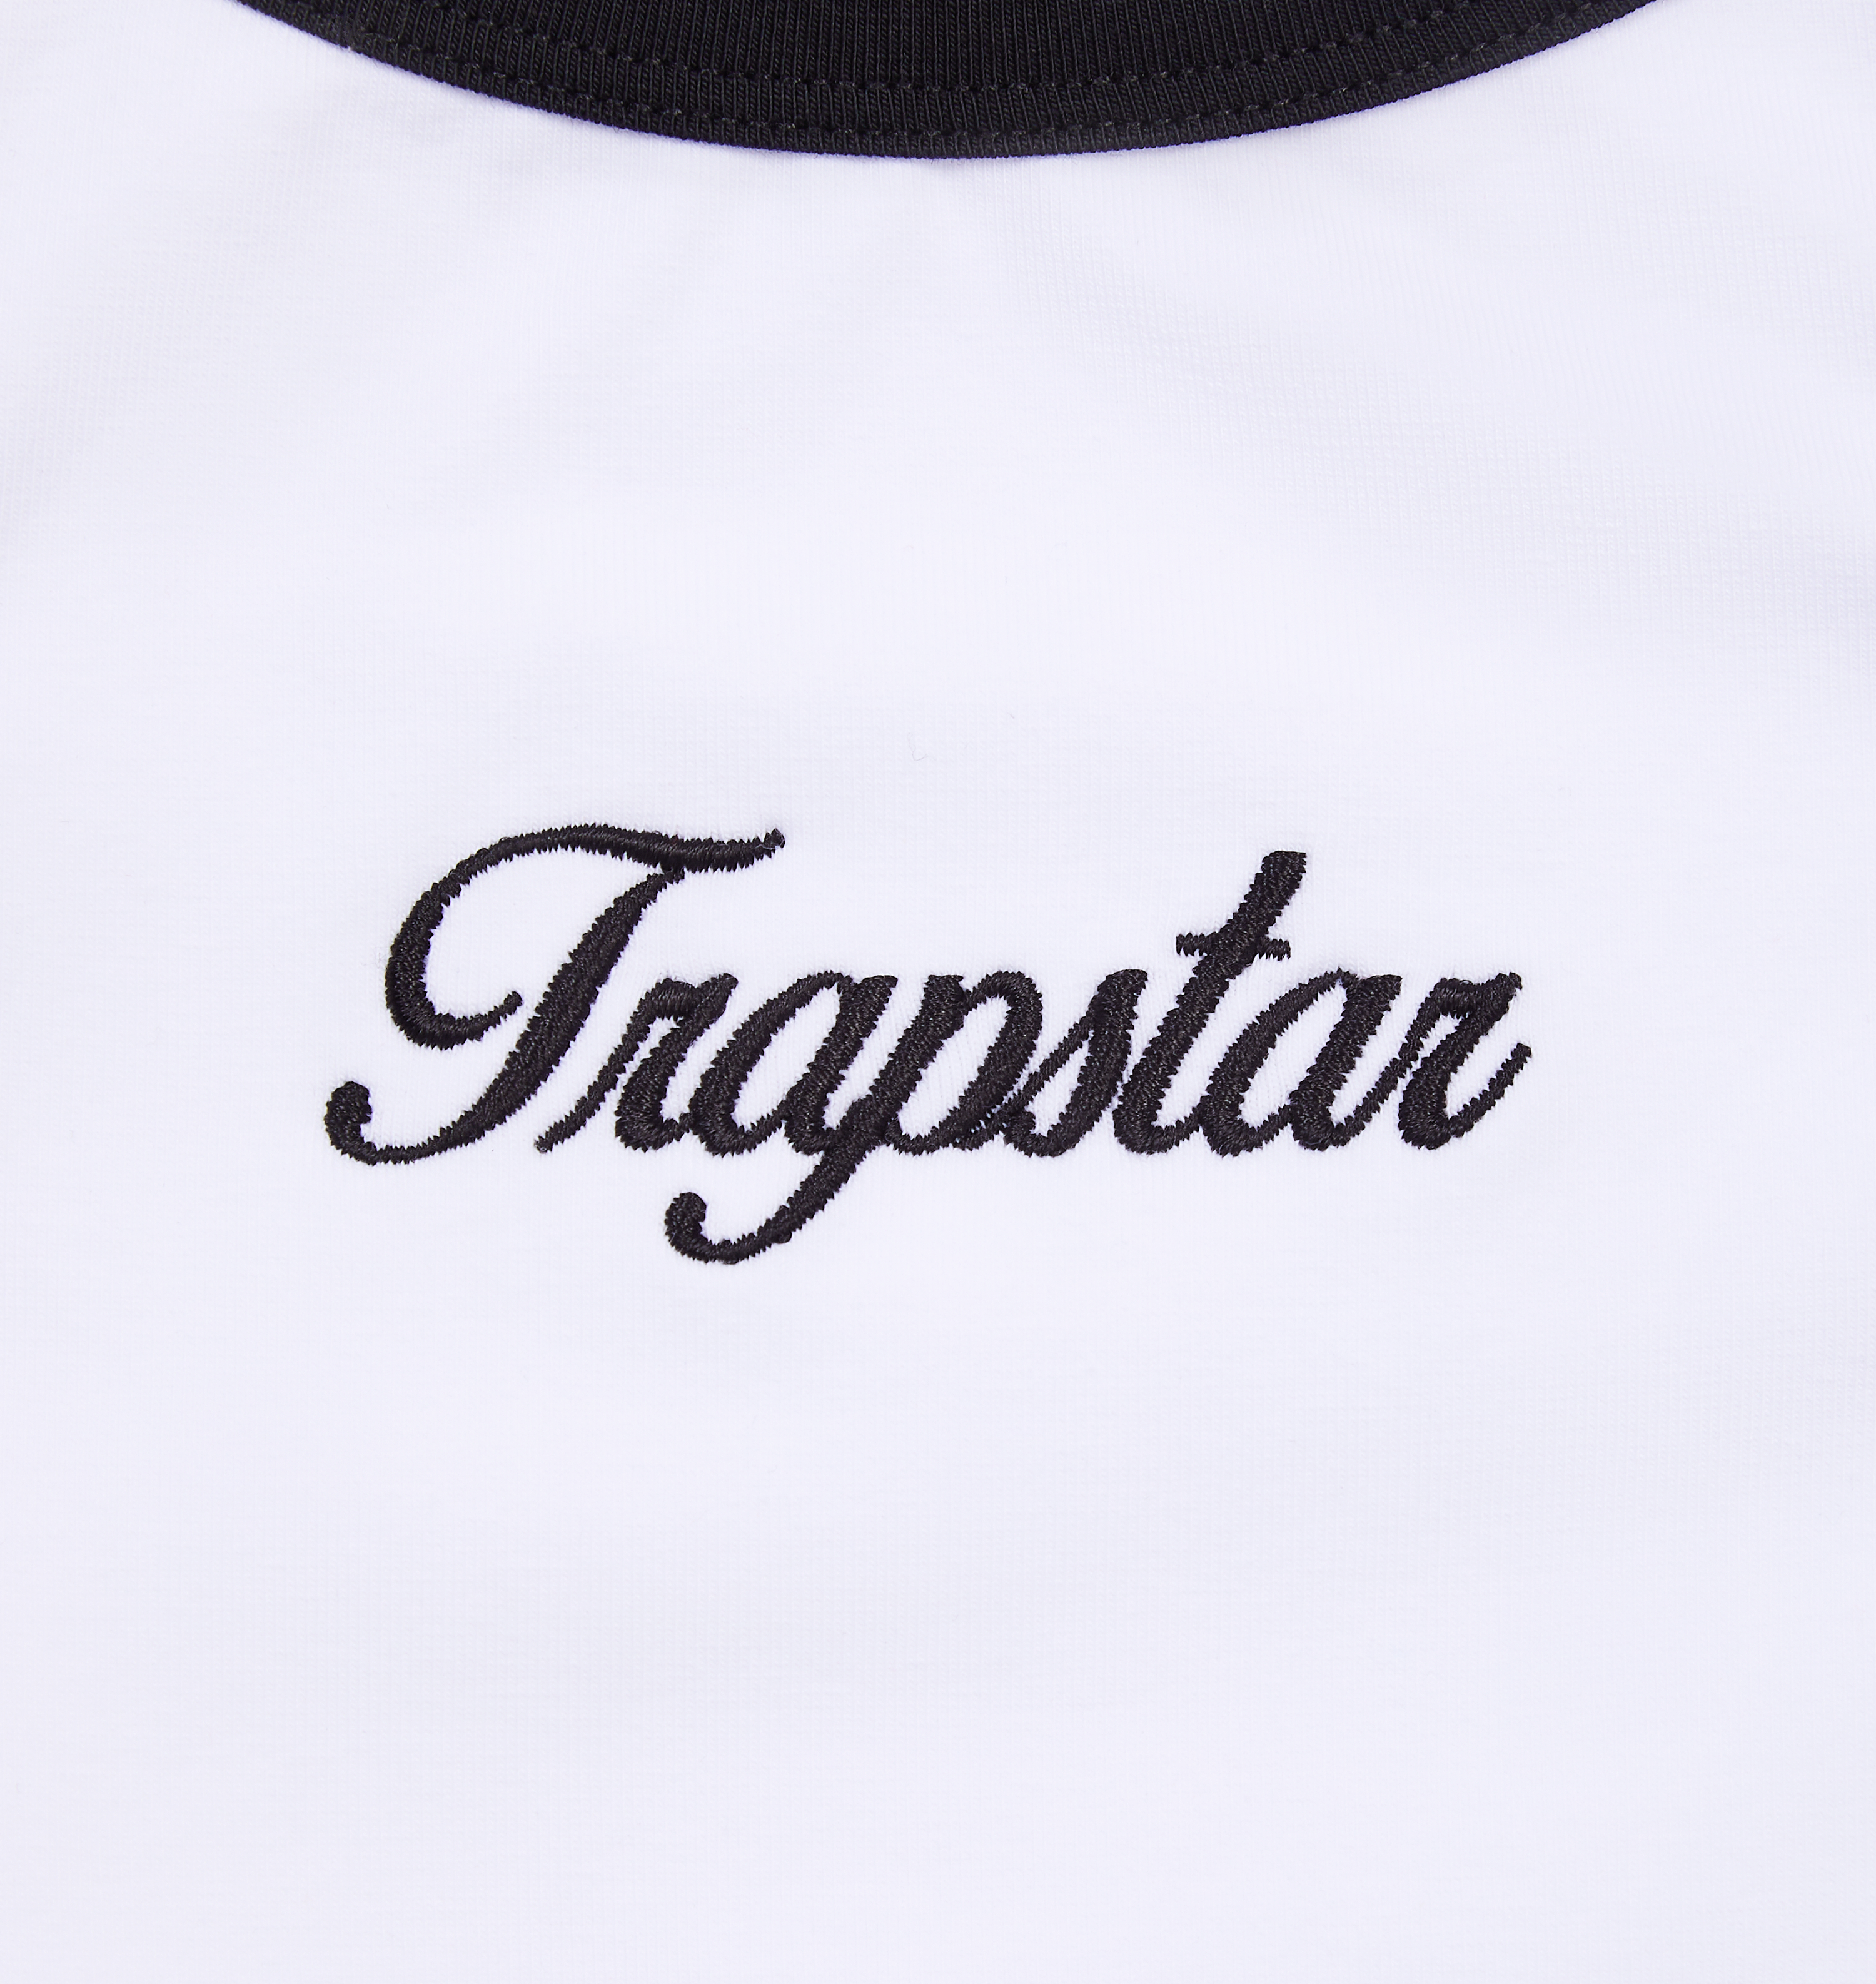 Women's Trapstar Racer Vest - White/Black